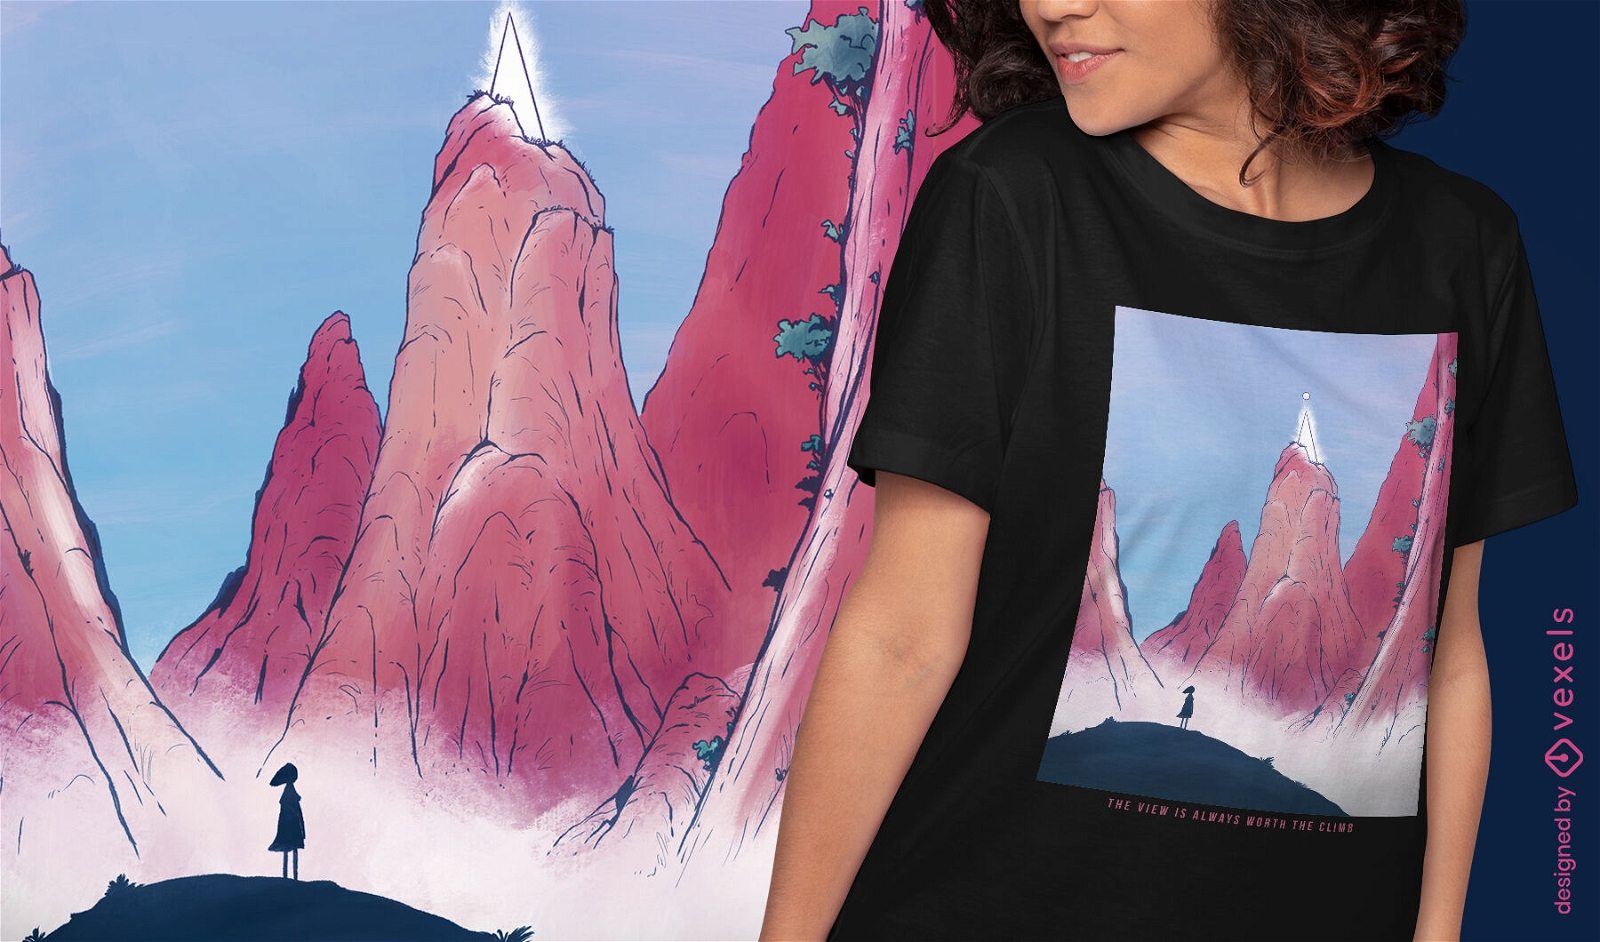 Dise?o de camiseta de paisaje de fantas?a de rocas gigantes.